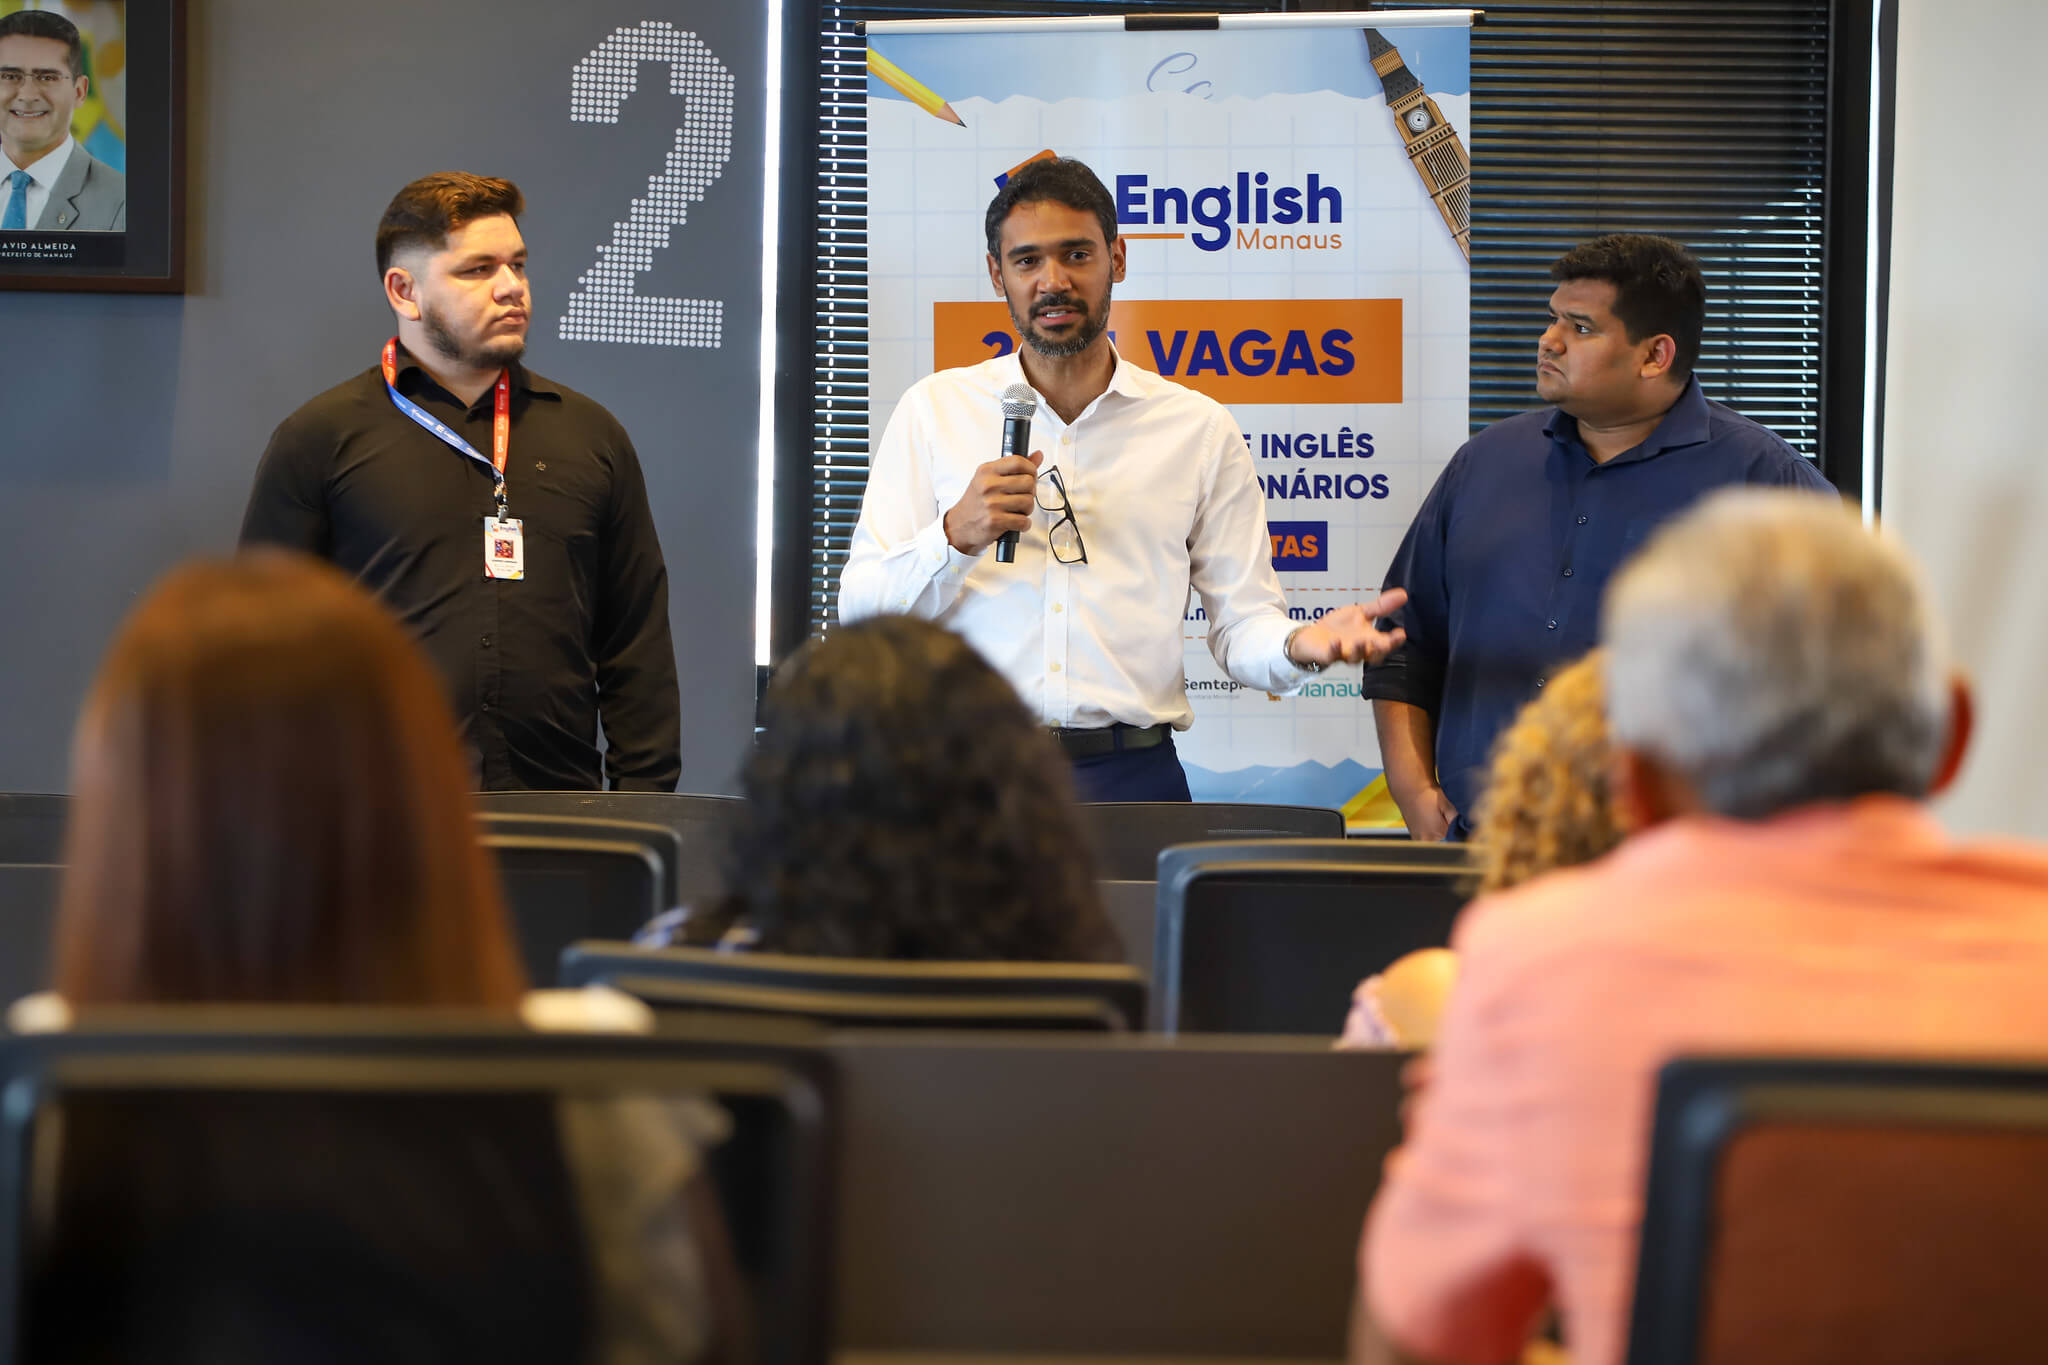 Prefeitura convoca candidatos pré-selecionados do ‘English Manaus’ para atualização cadastral